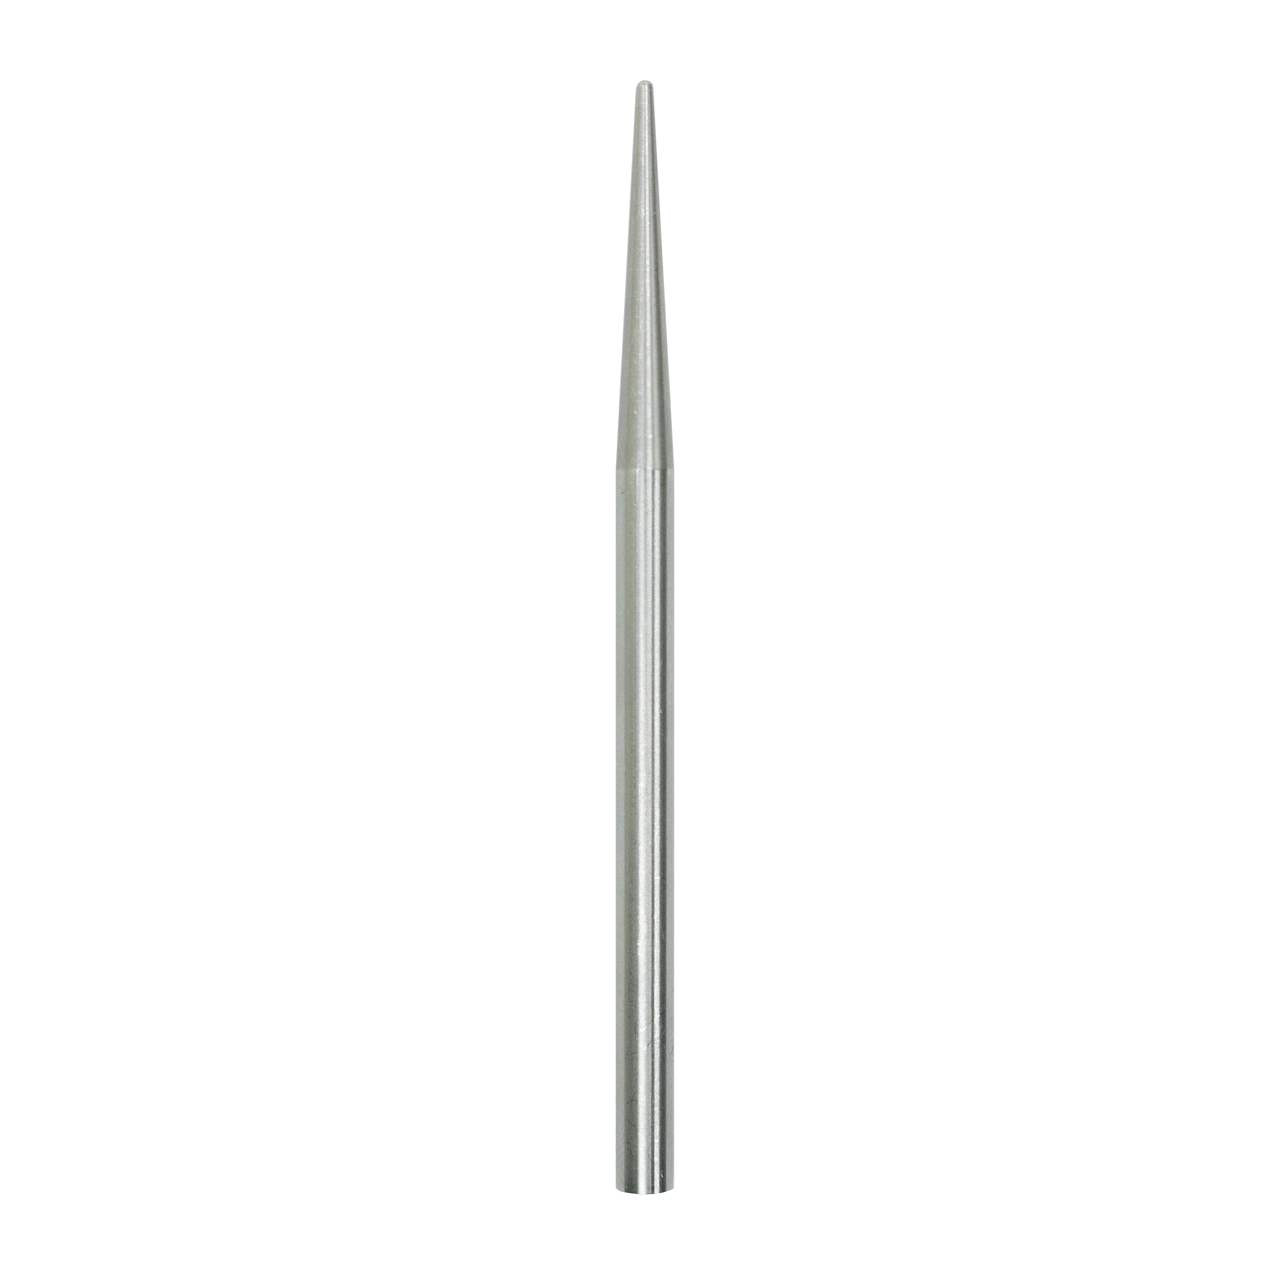 Straight Paracord Needle (Fid) - 3.5